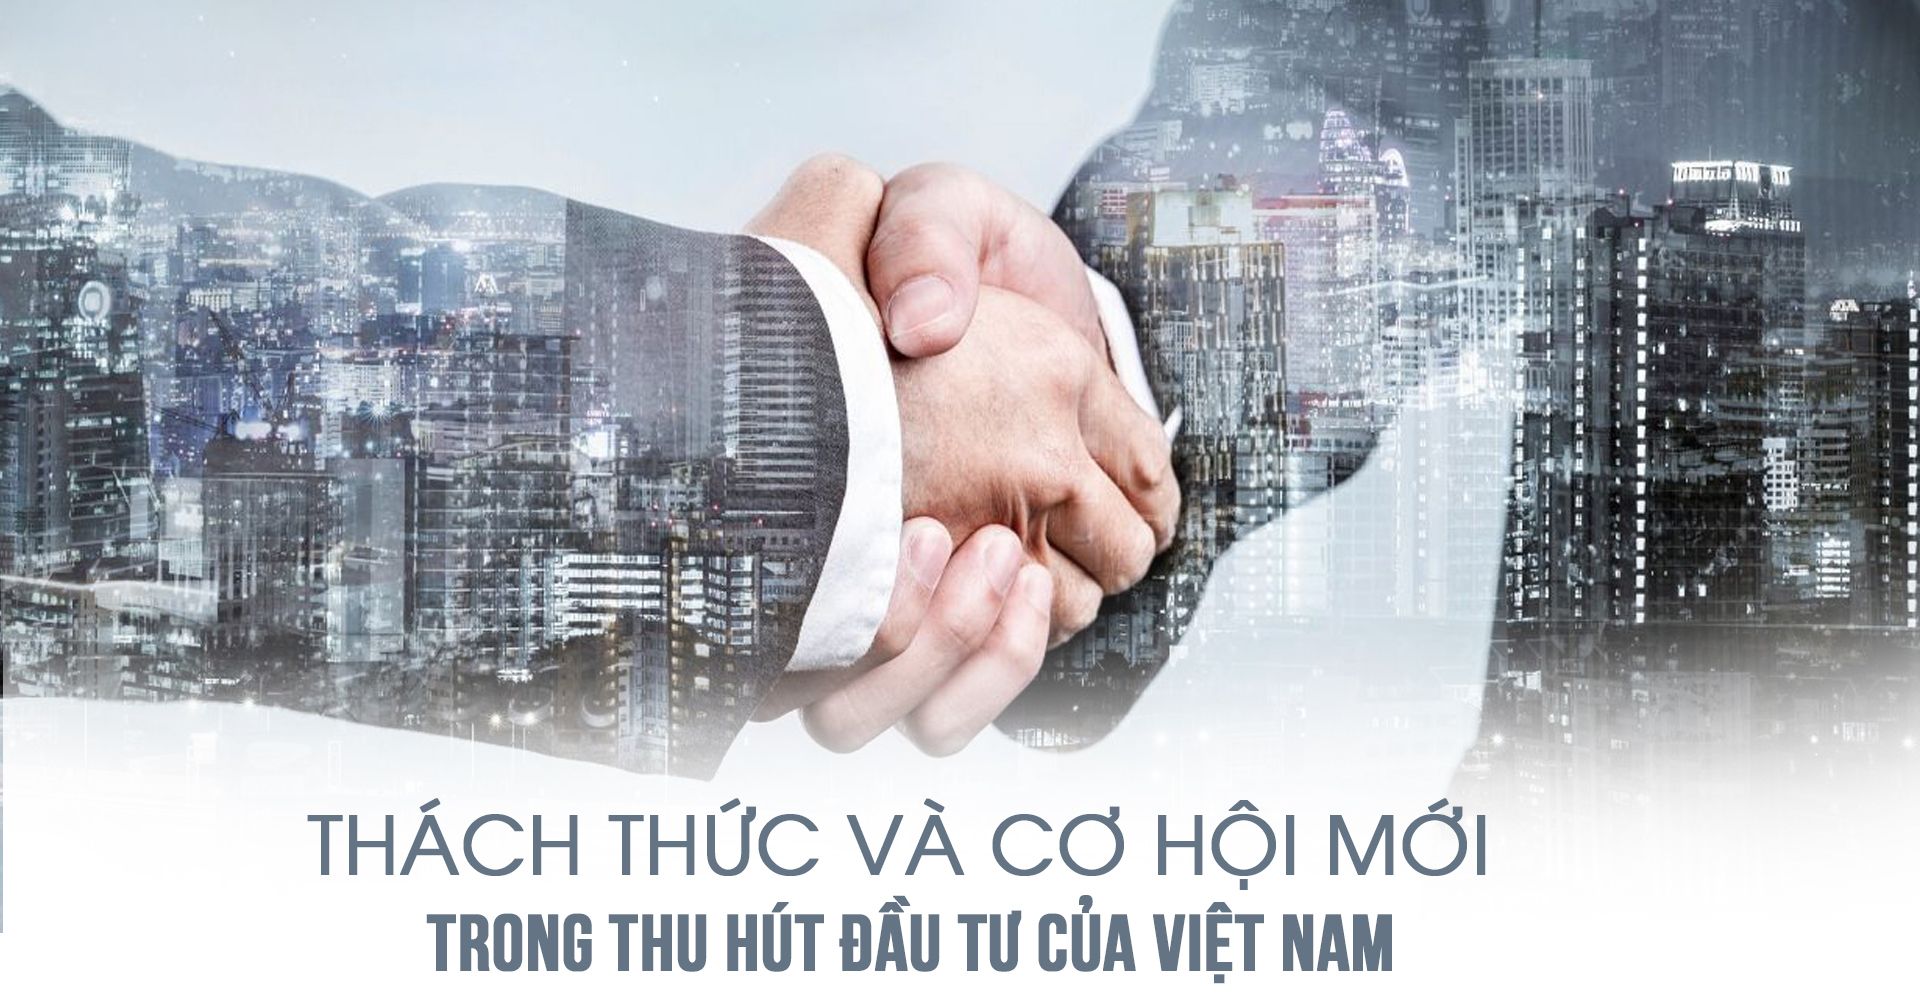 Thách thức và cơ hội mới trong thu hút đầu tư của Việt Nam